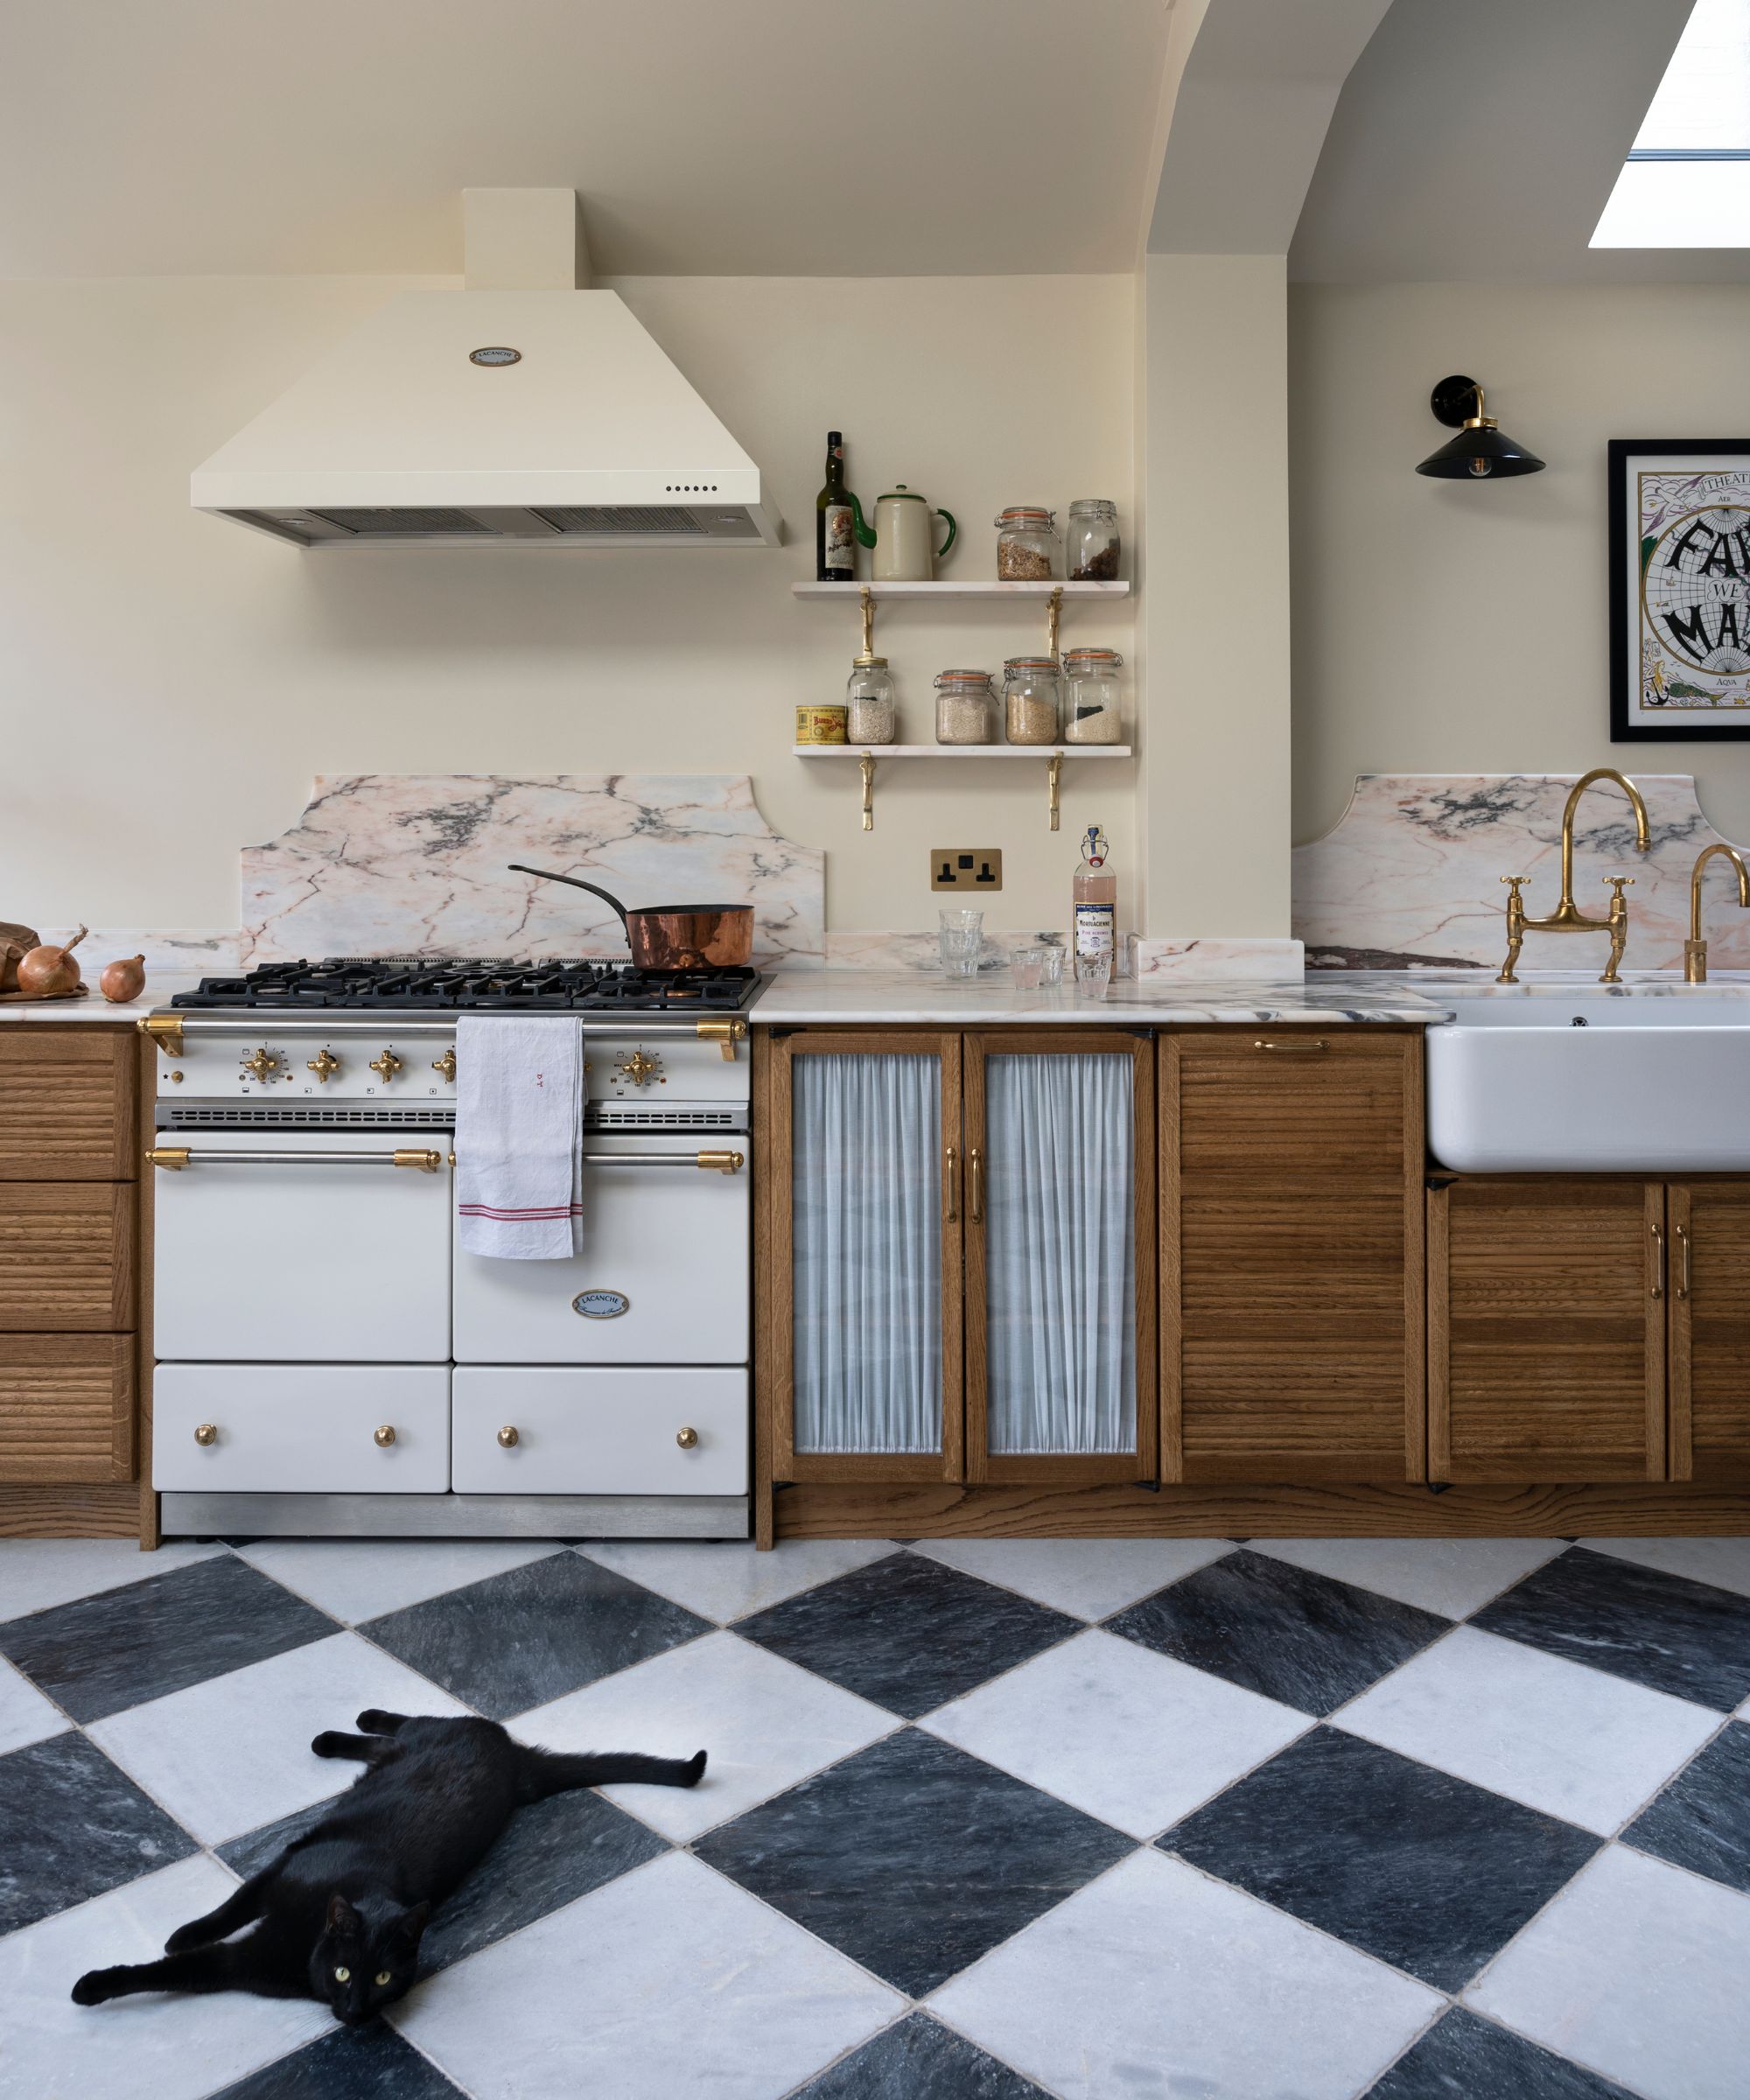 deVOL Haberdasher's kitchen with chequered tiled floor